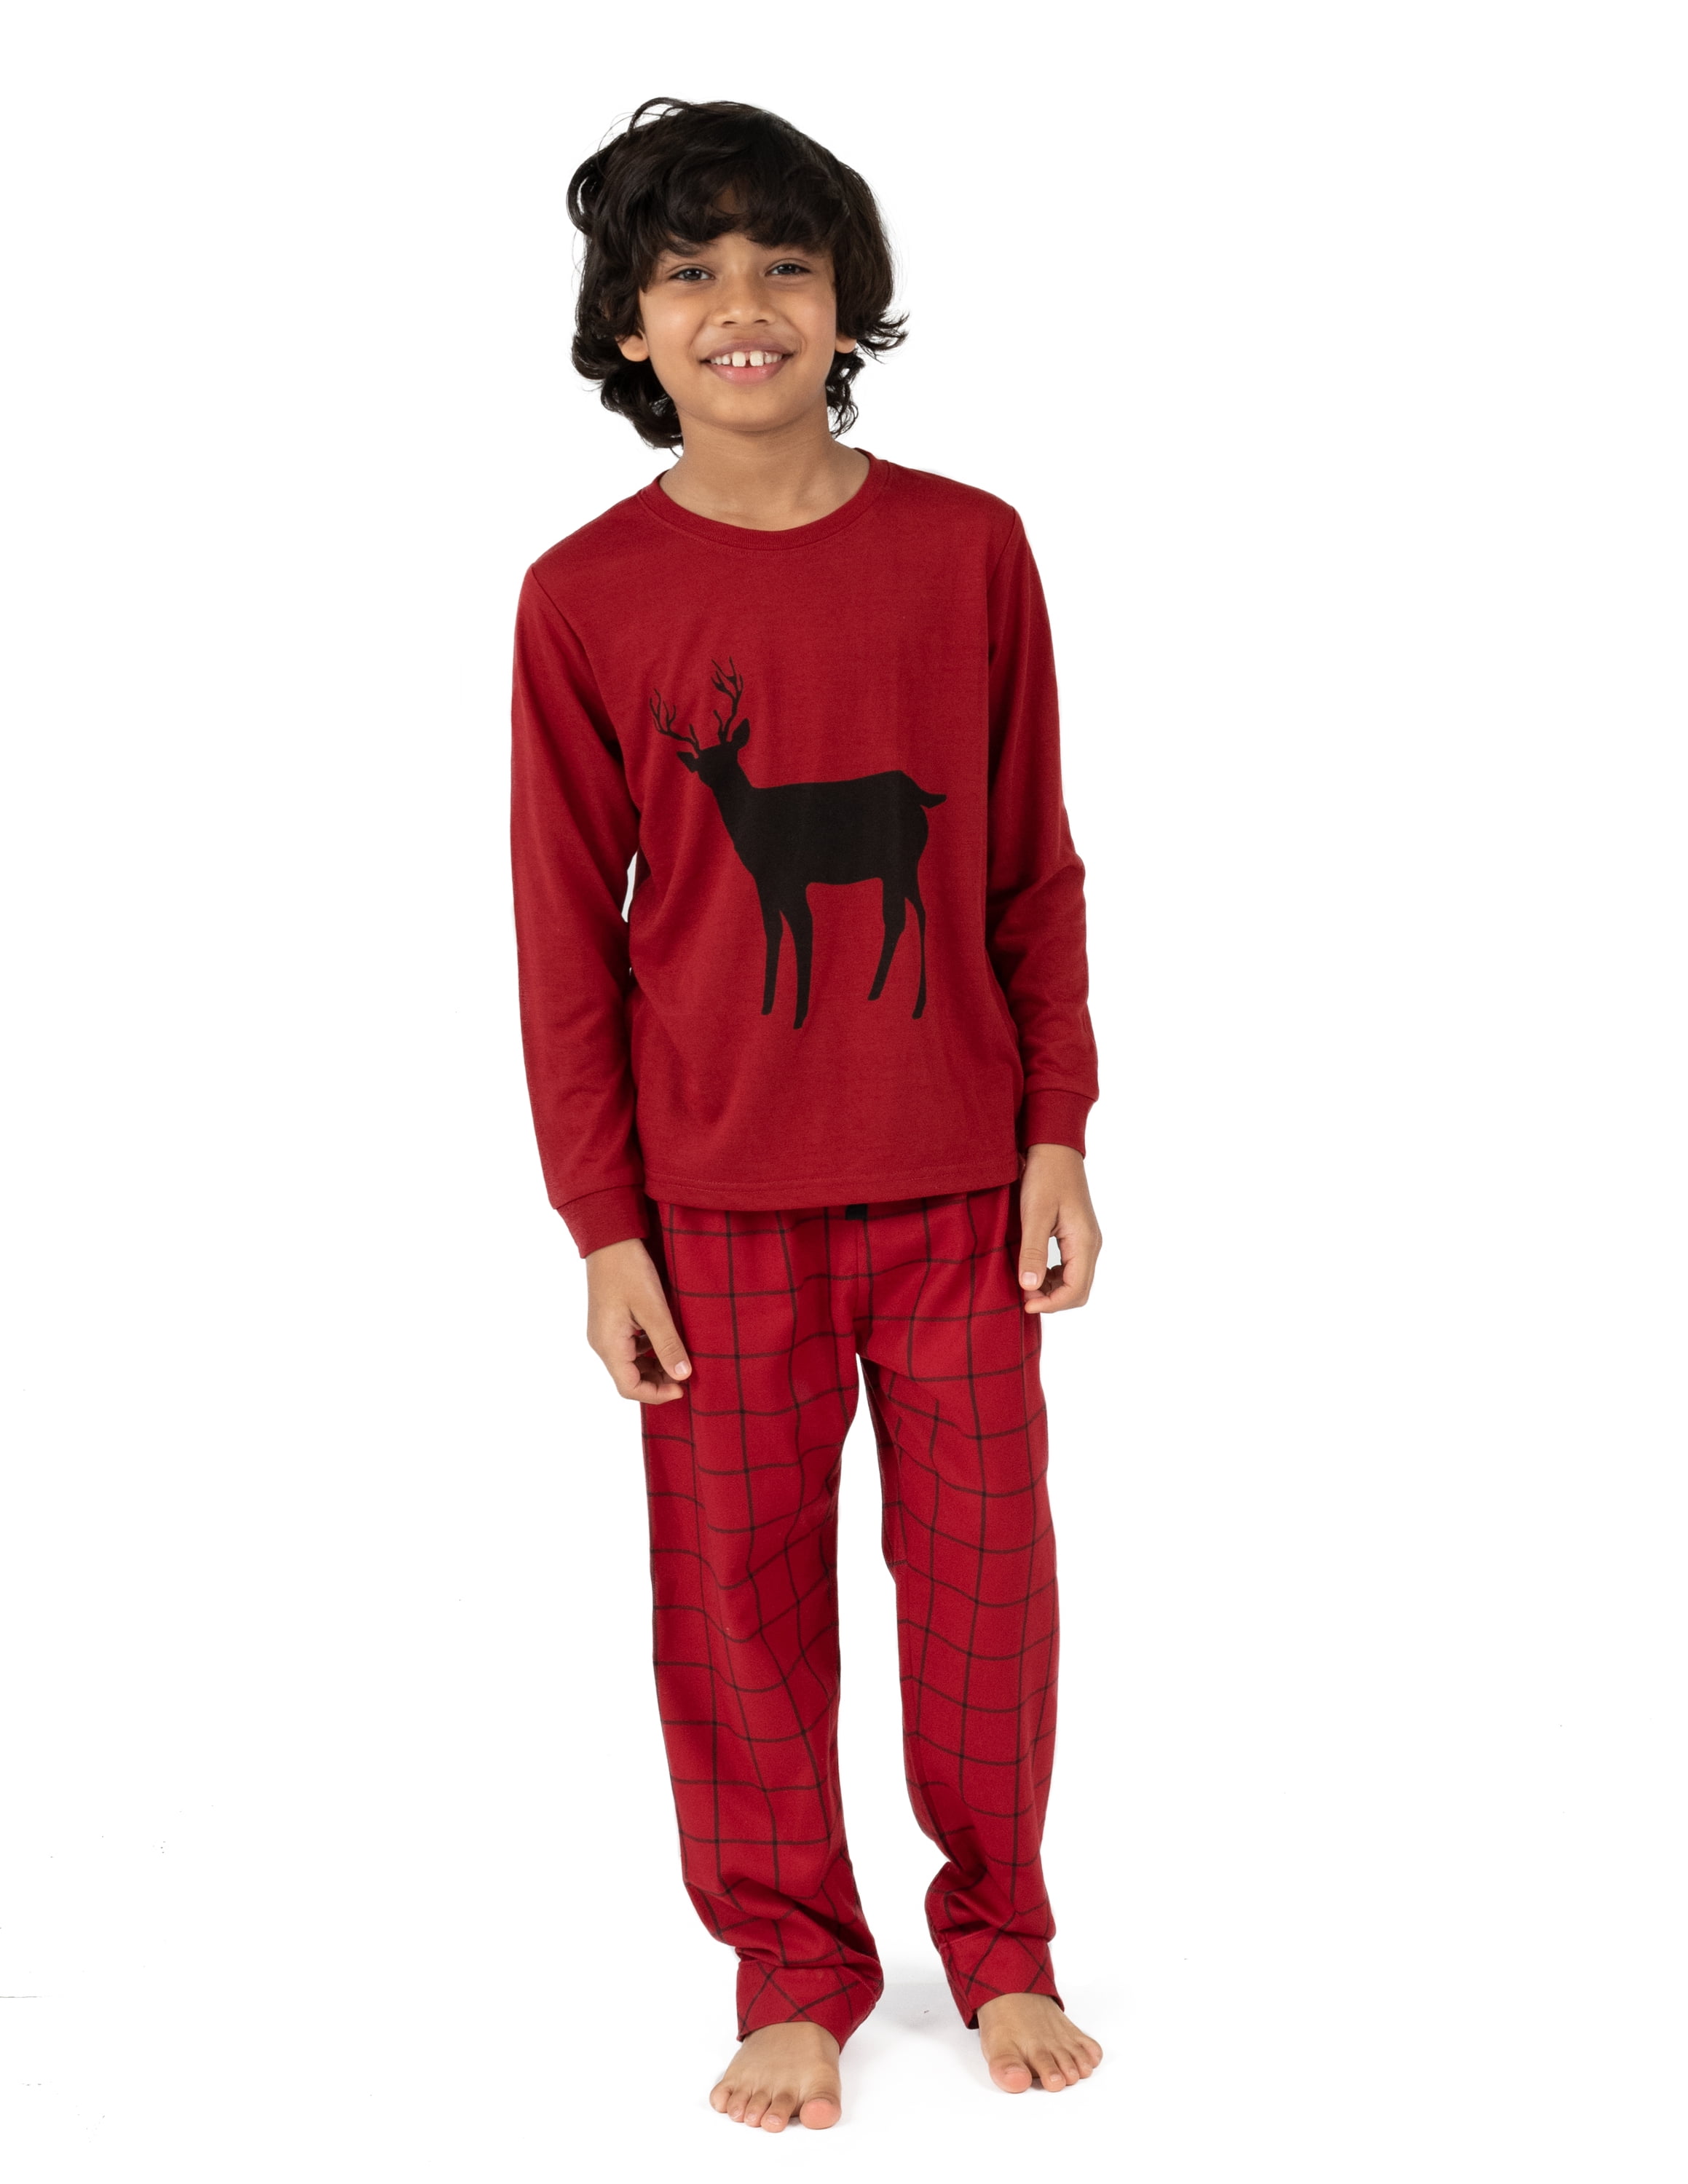 BOOPH Boys Girls 2 Piece Pajamas Set Kids Toddler Long Sleeves Cotton Sleepwear